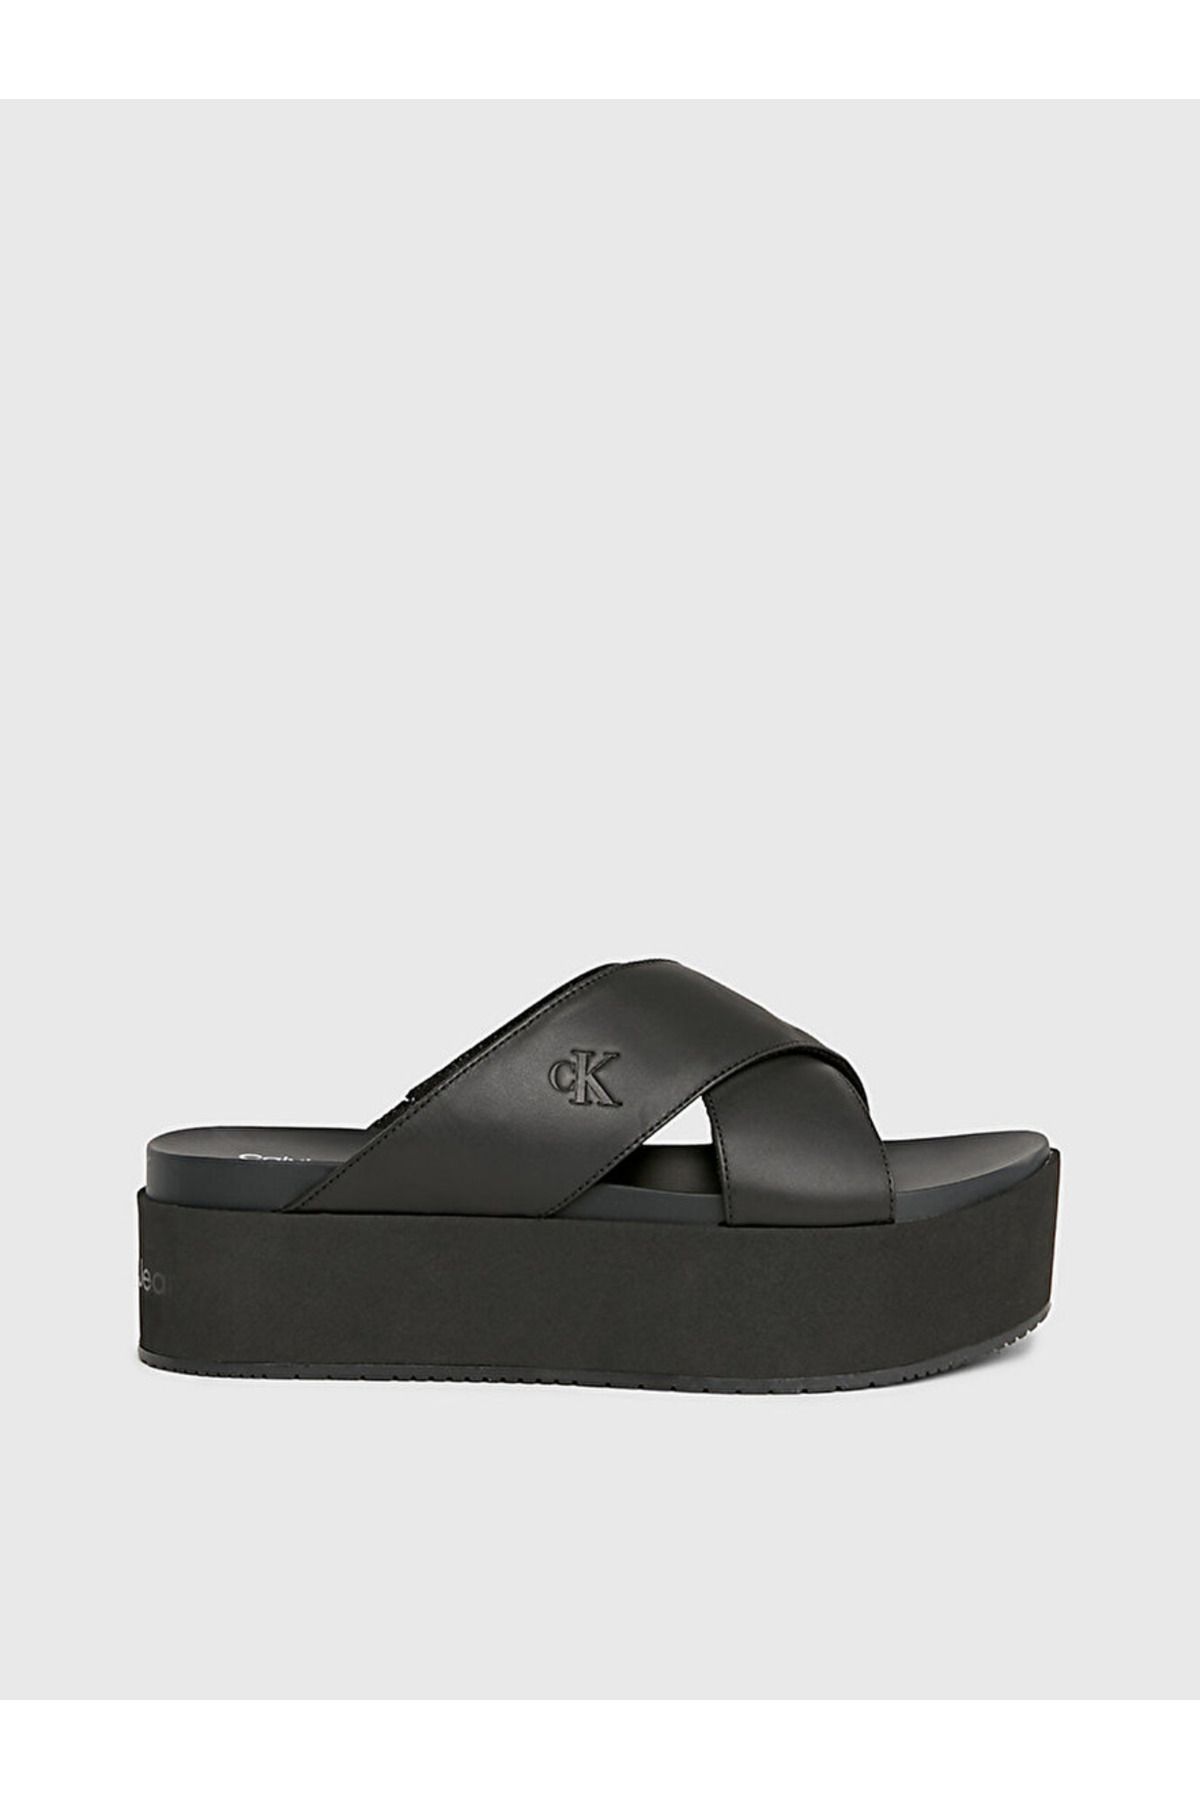 Calvin Klein Leather Platform Sandals